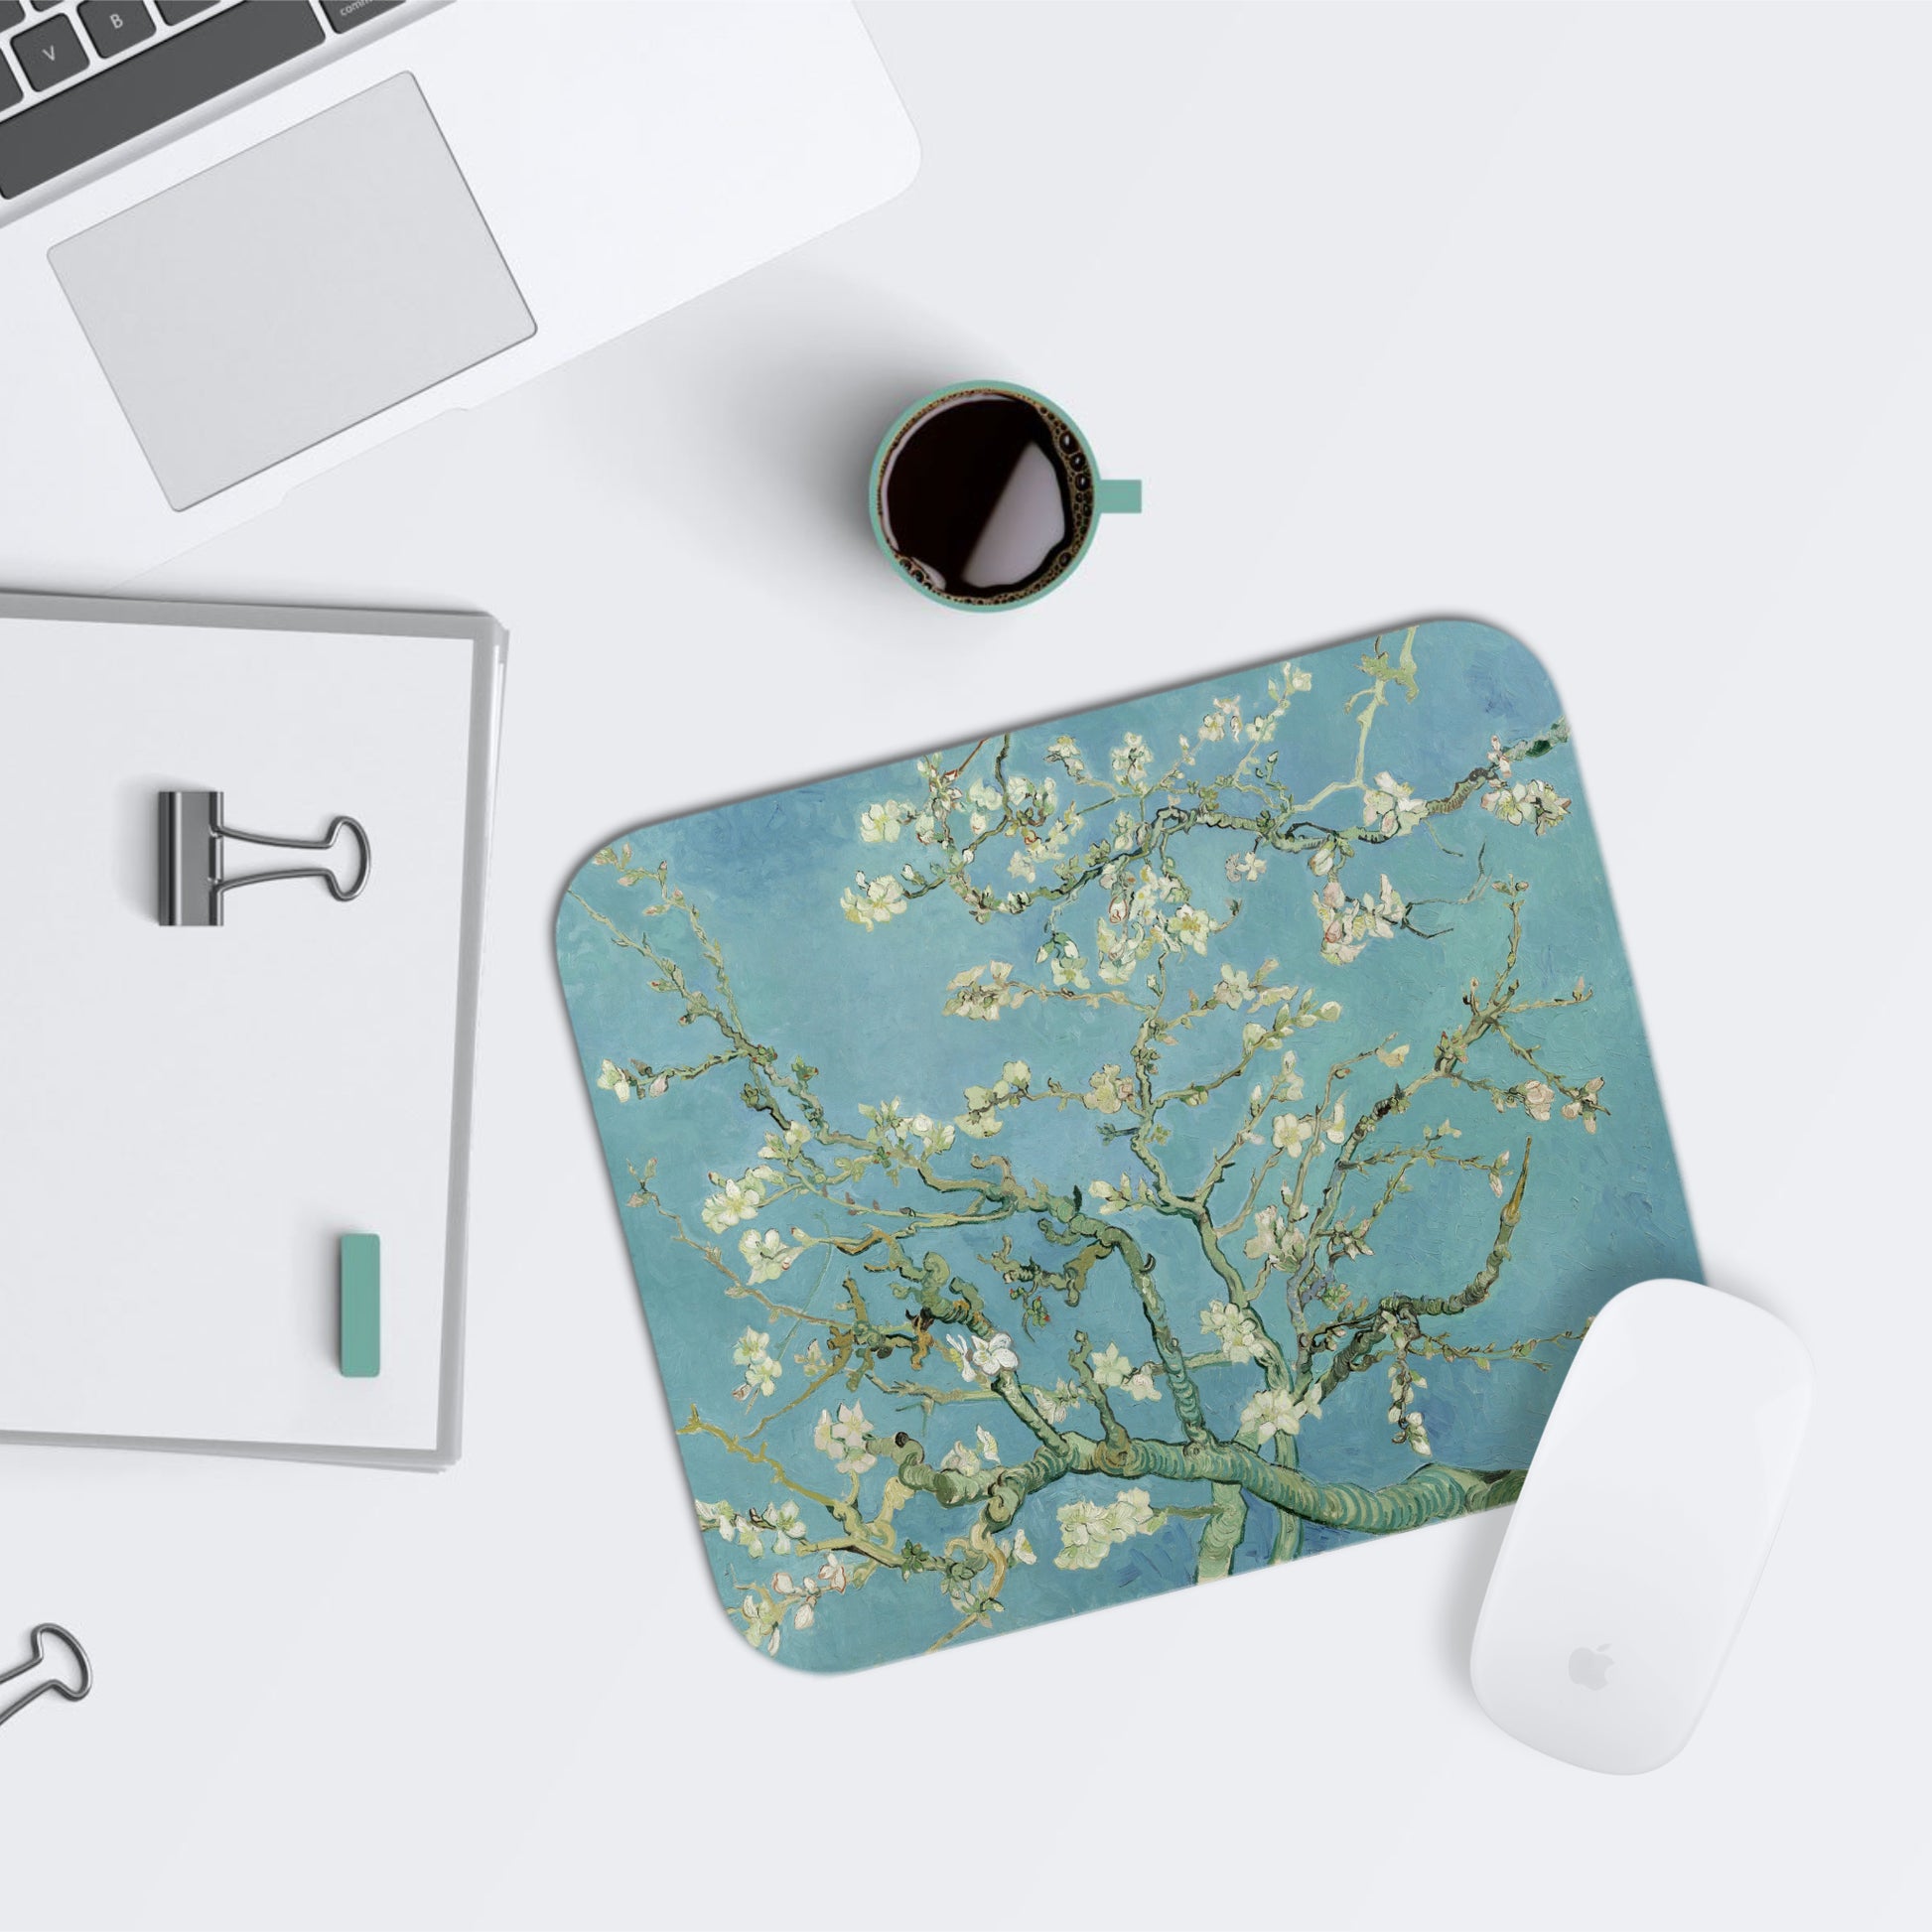 Mouse Pad, Van Gogh Print, Almond Blossom, Floral Mousepad, Desk Pad, Desktop Computer, Laptop Accessories